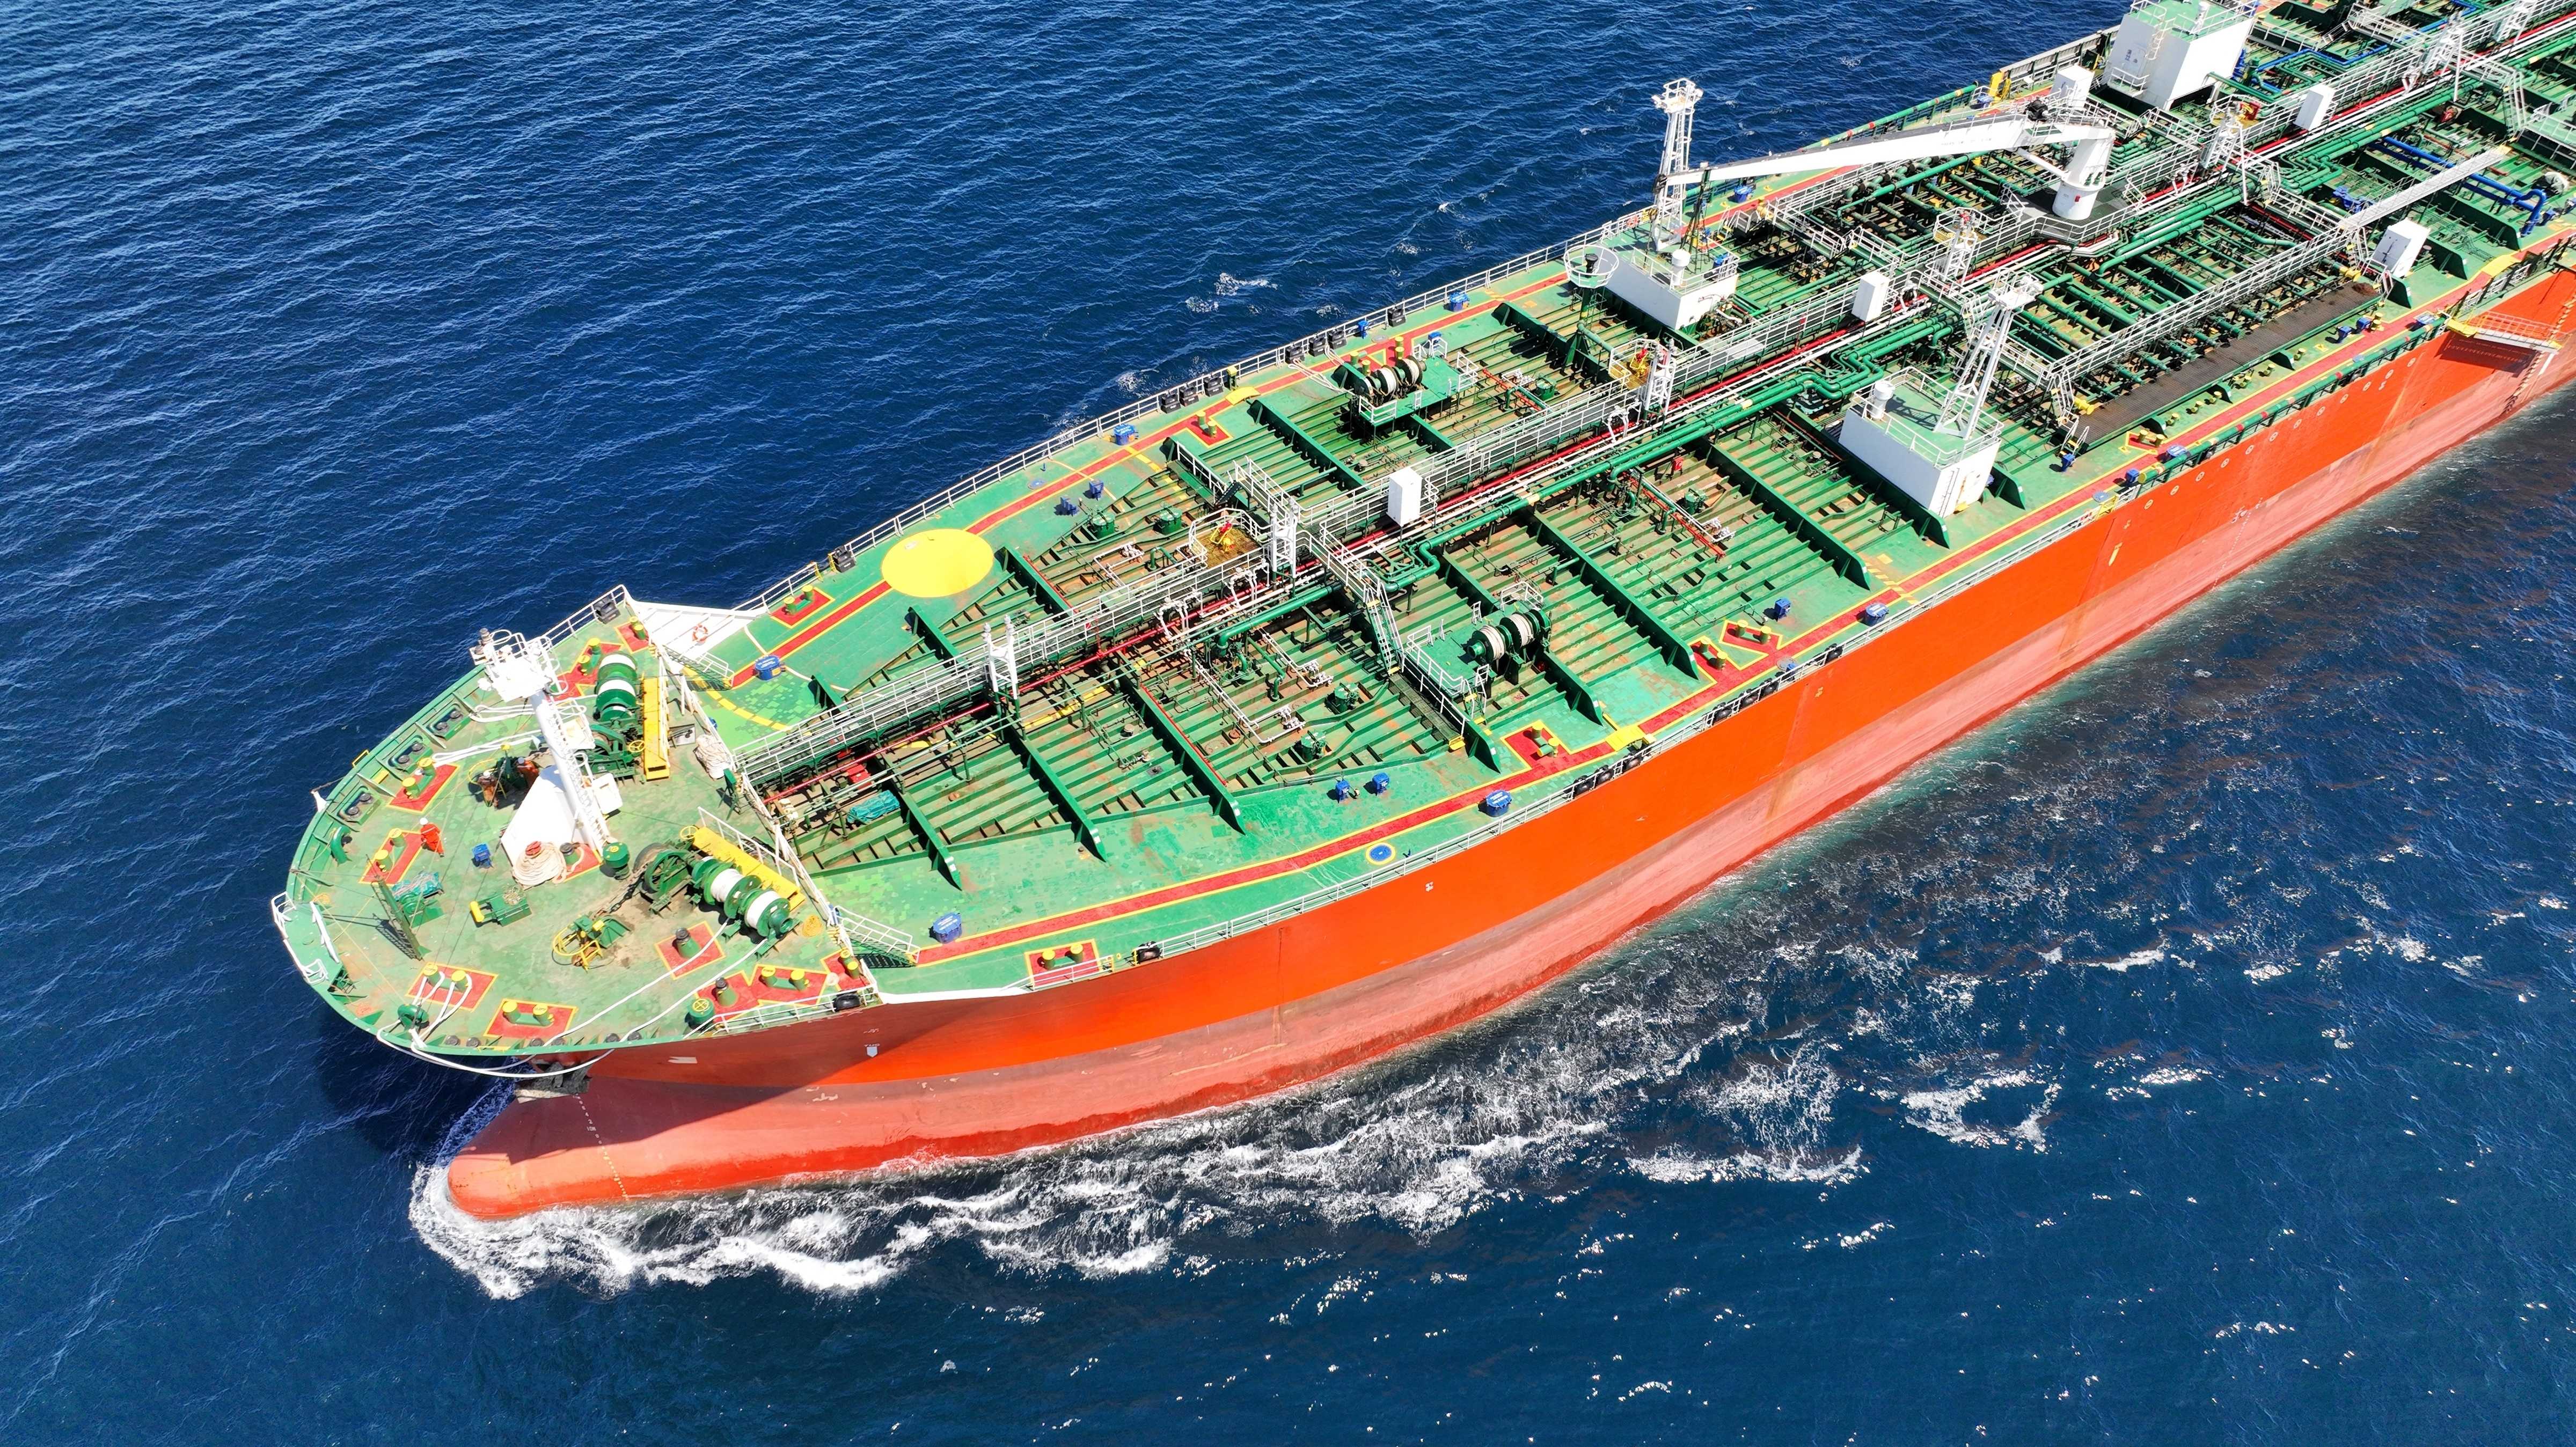 Öltanker auf dem Meer zeigt Russlands steigende Öleinnahmen trotz Sanktionen